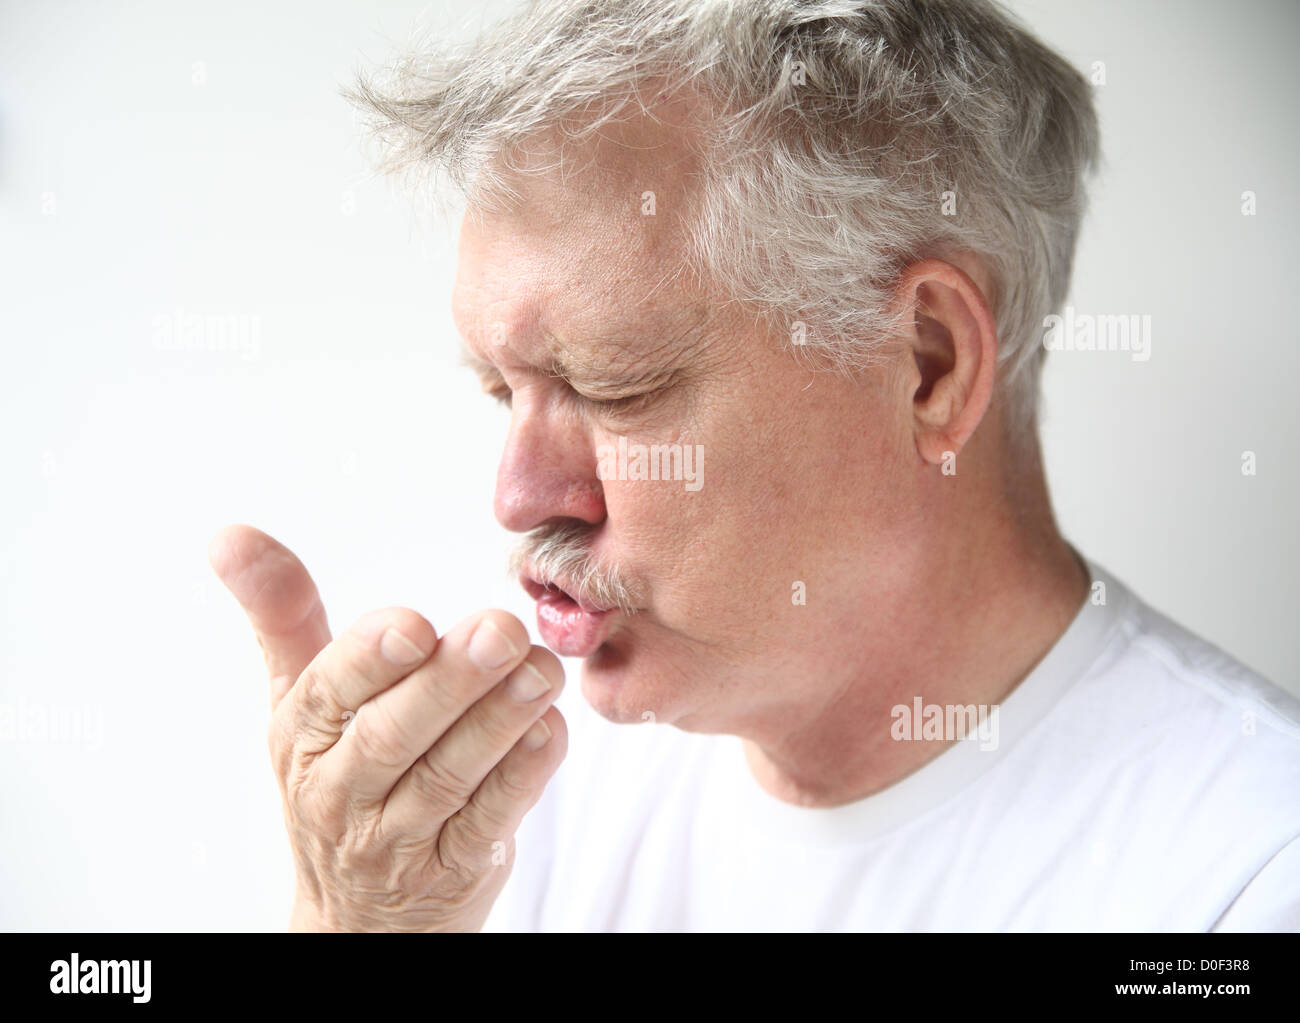 senior man sneezes into his hand Stock Photo